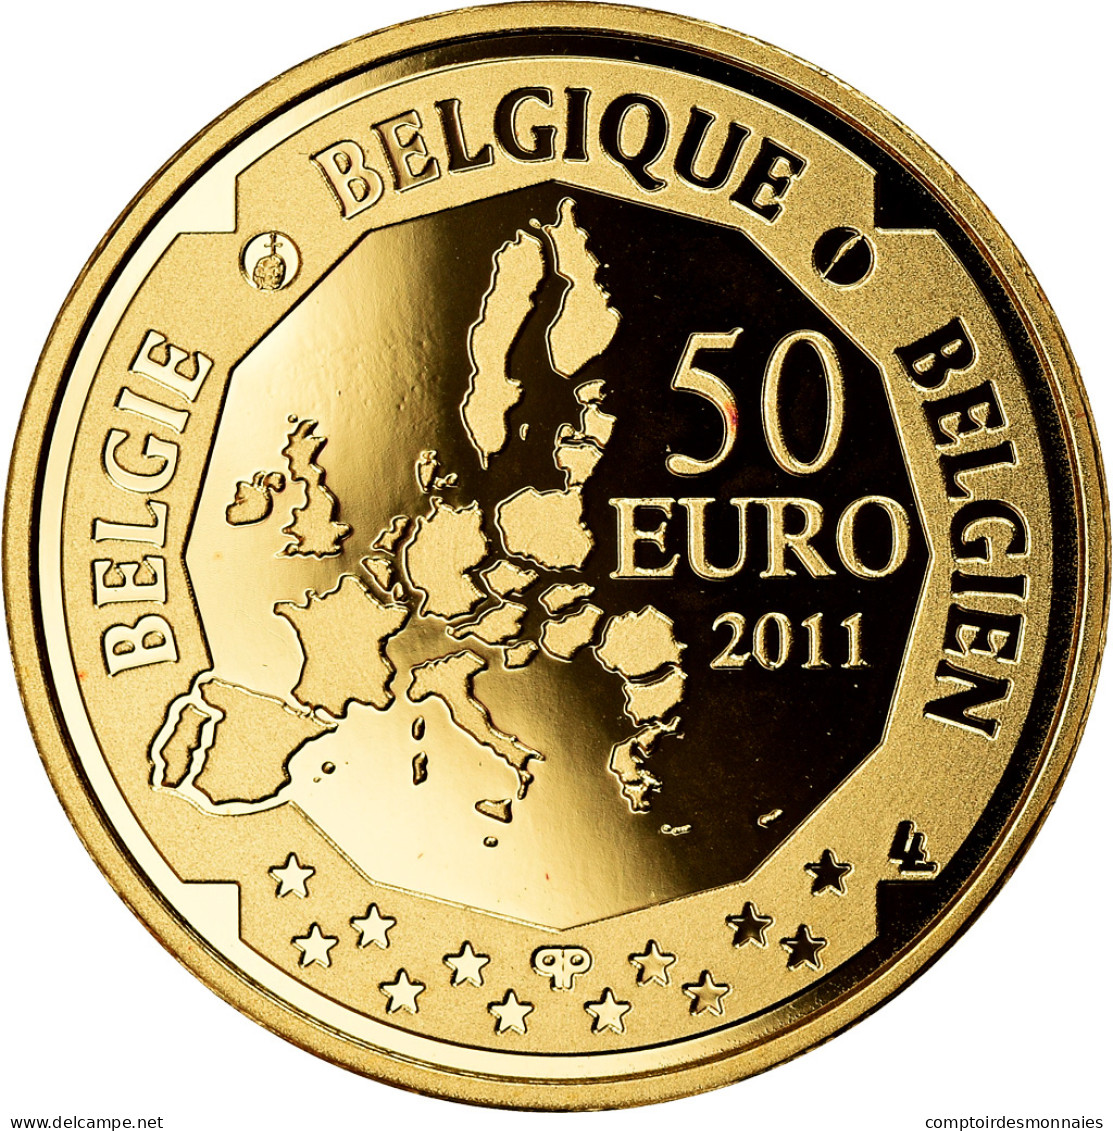 Belgique, Albert II, 50 Euro, 2011, Bruxelles, BELGIAN DEEP SEA EXPLORATION - België